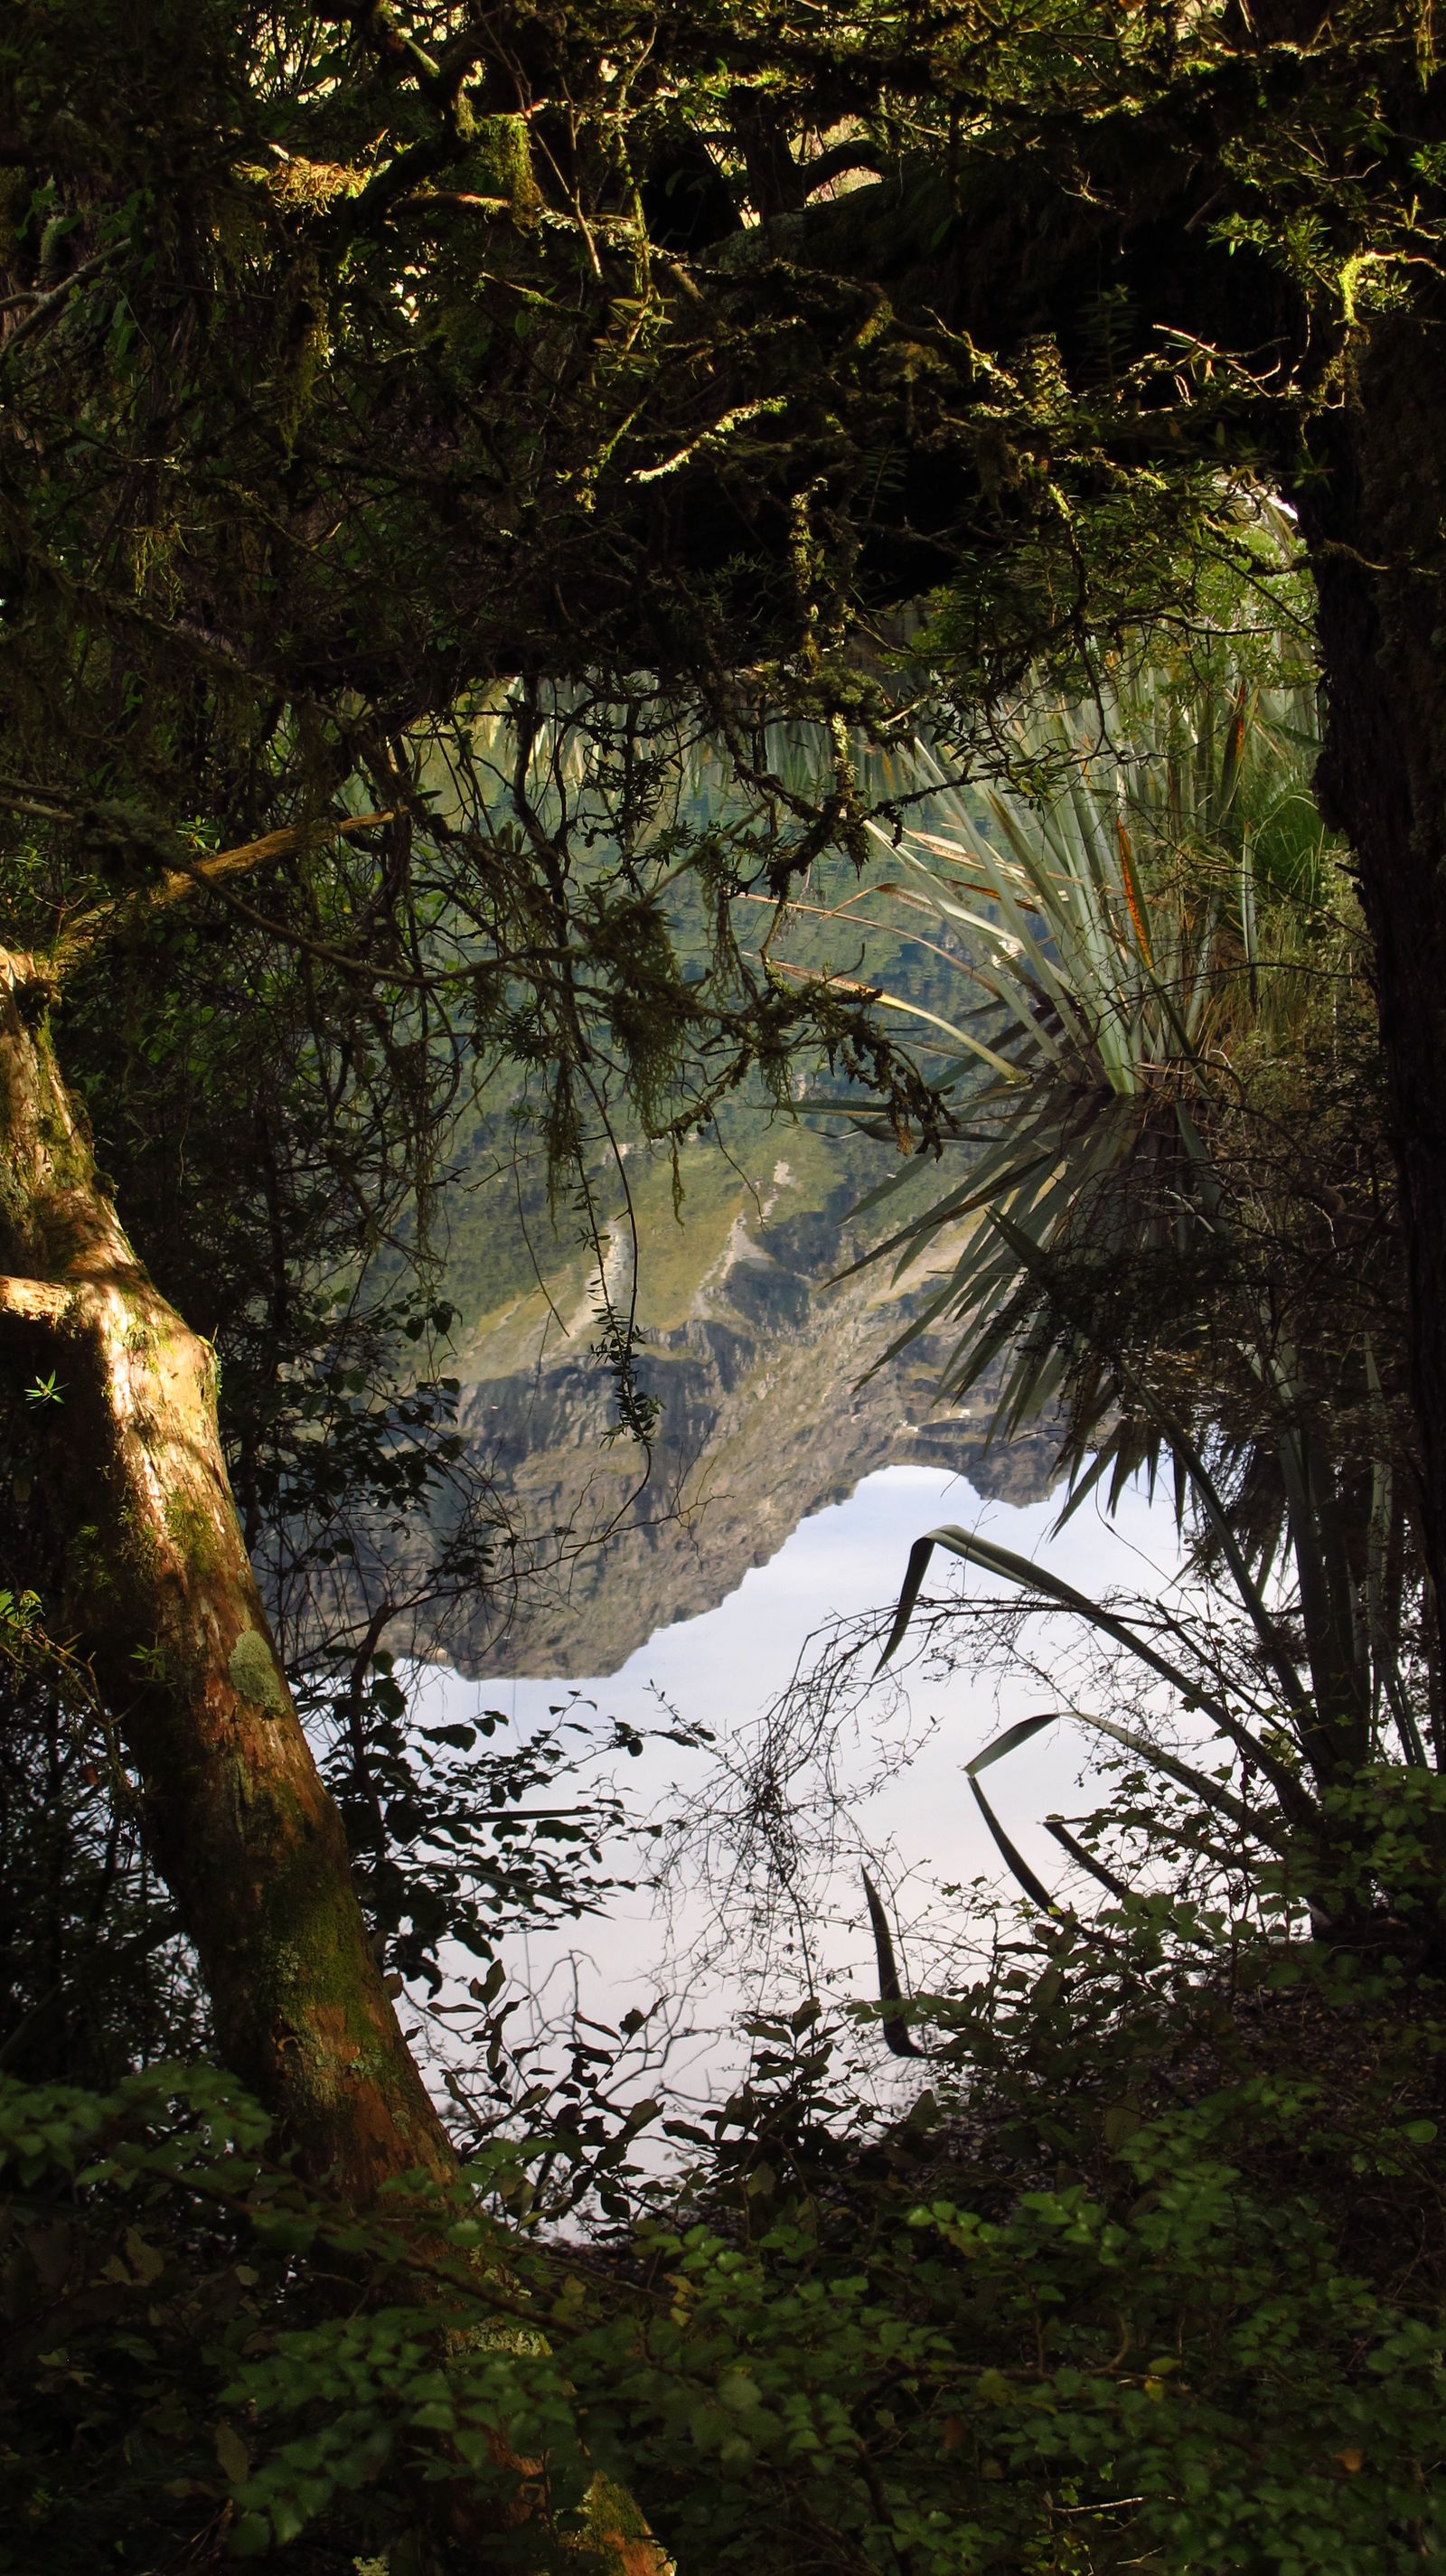 © Cristina Erdmann - "Fiords Visions" New Zealand, 2014